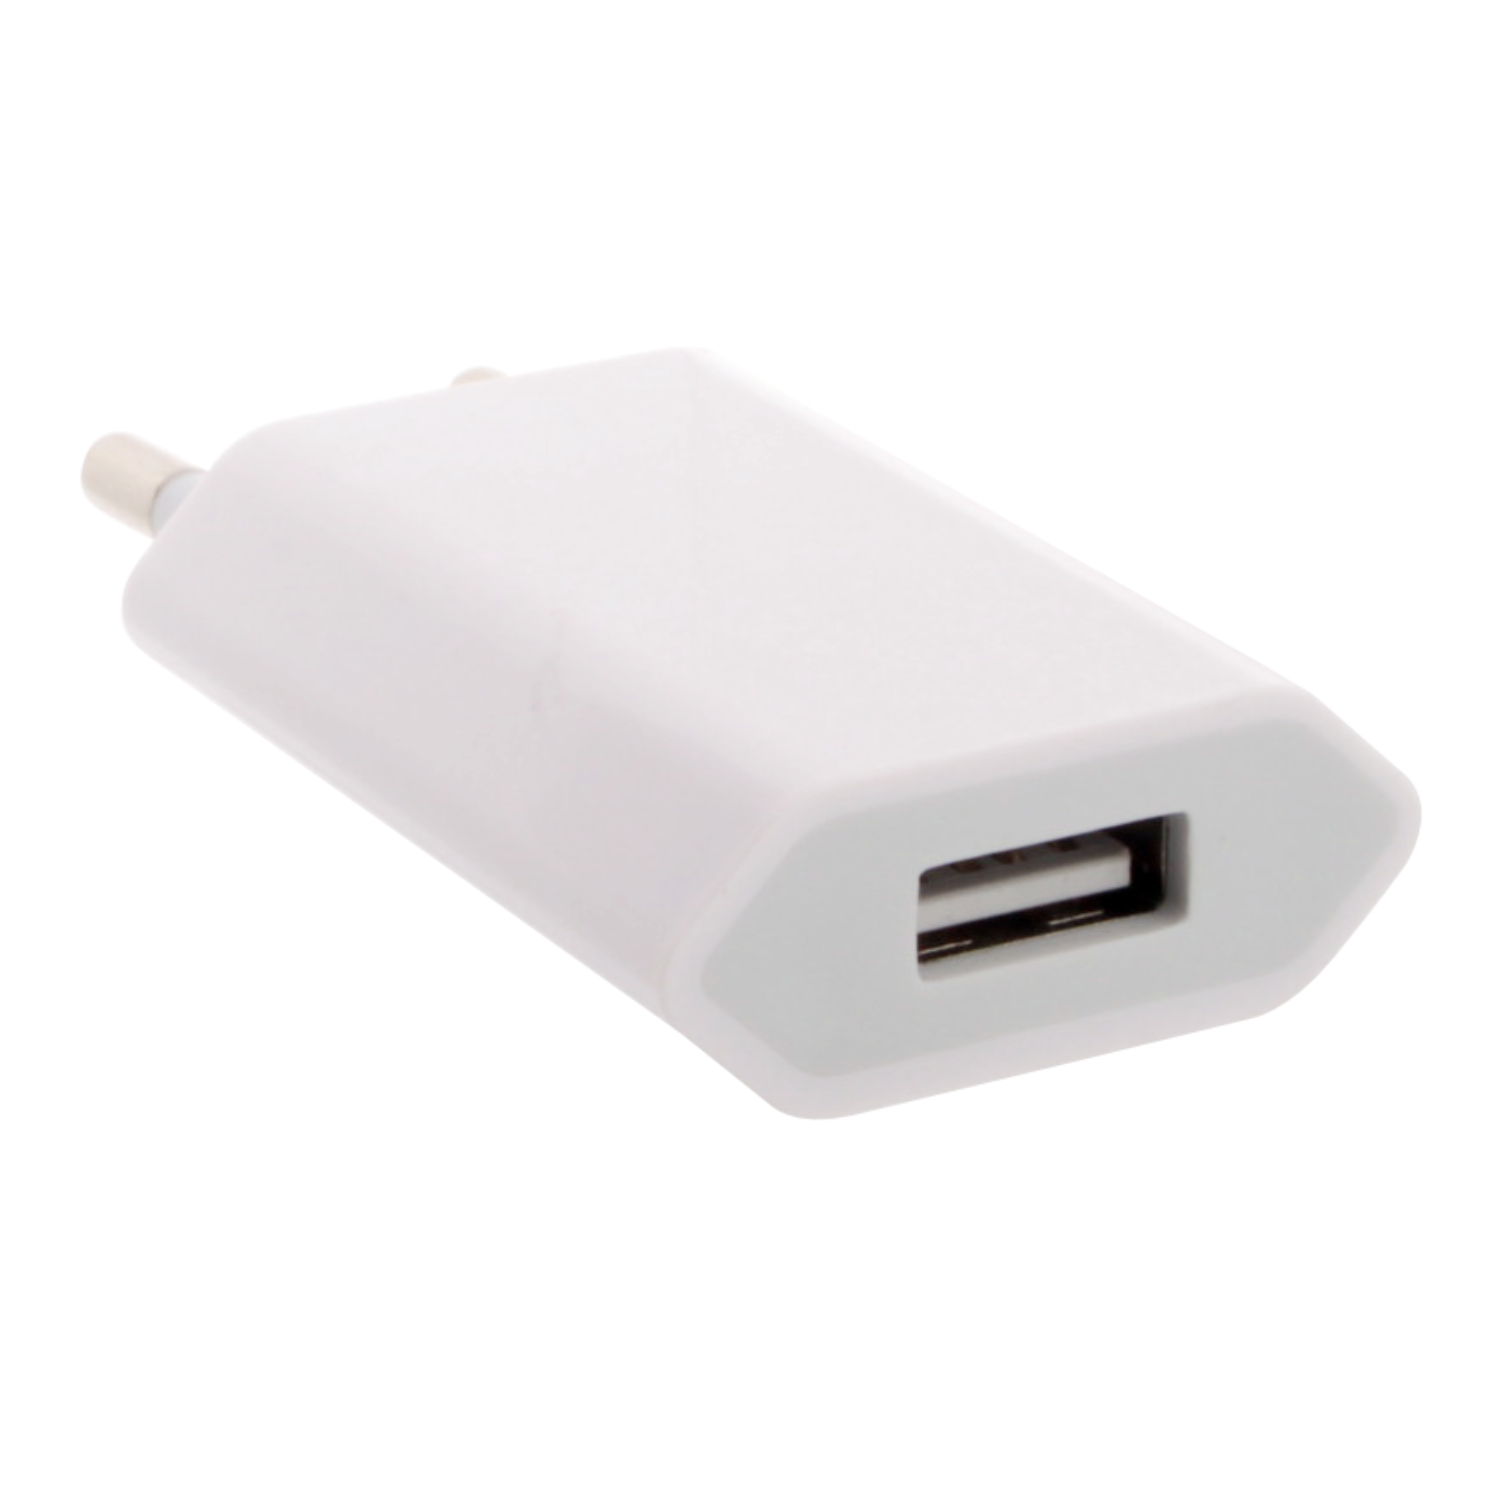 СЗУ с USB выходом iPhone плоская 1,0A ОРИГИНАЛ белая в коробочке